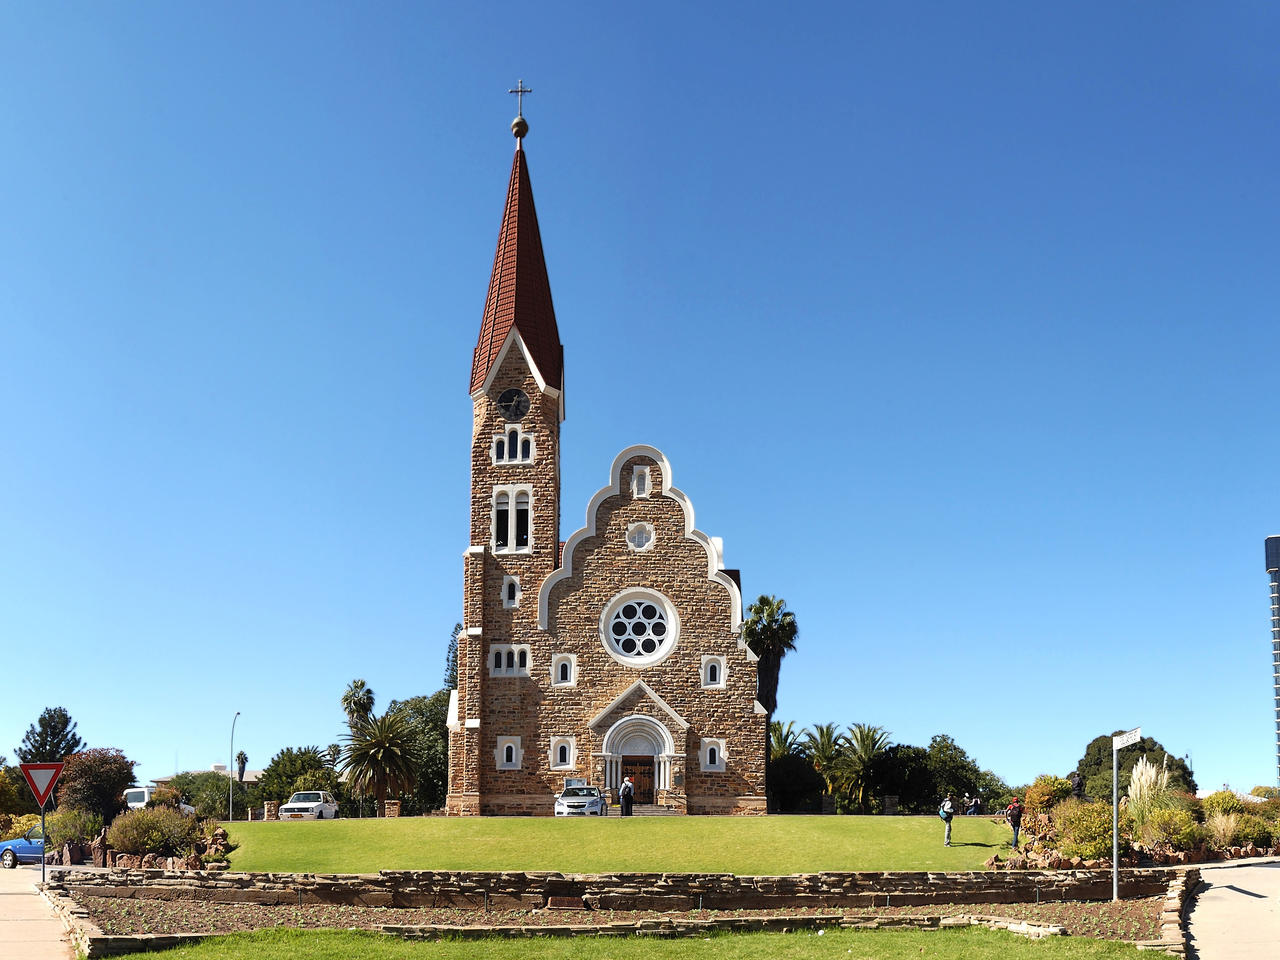 Windhoek met slechts 200.000 inwoners